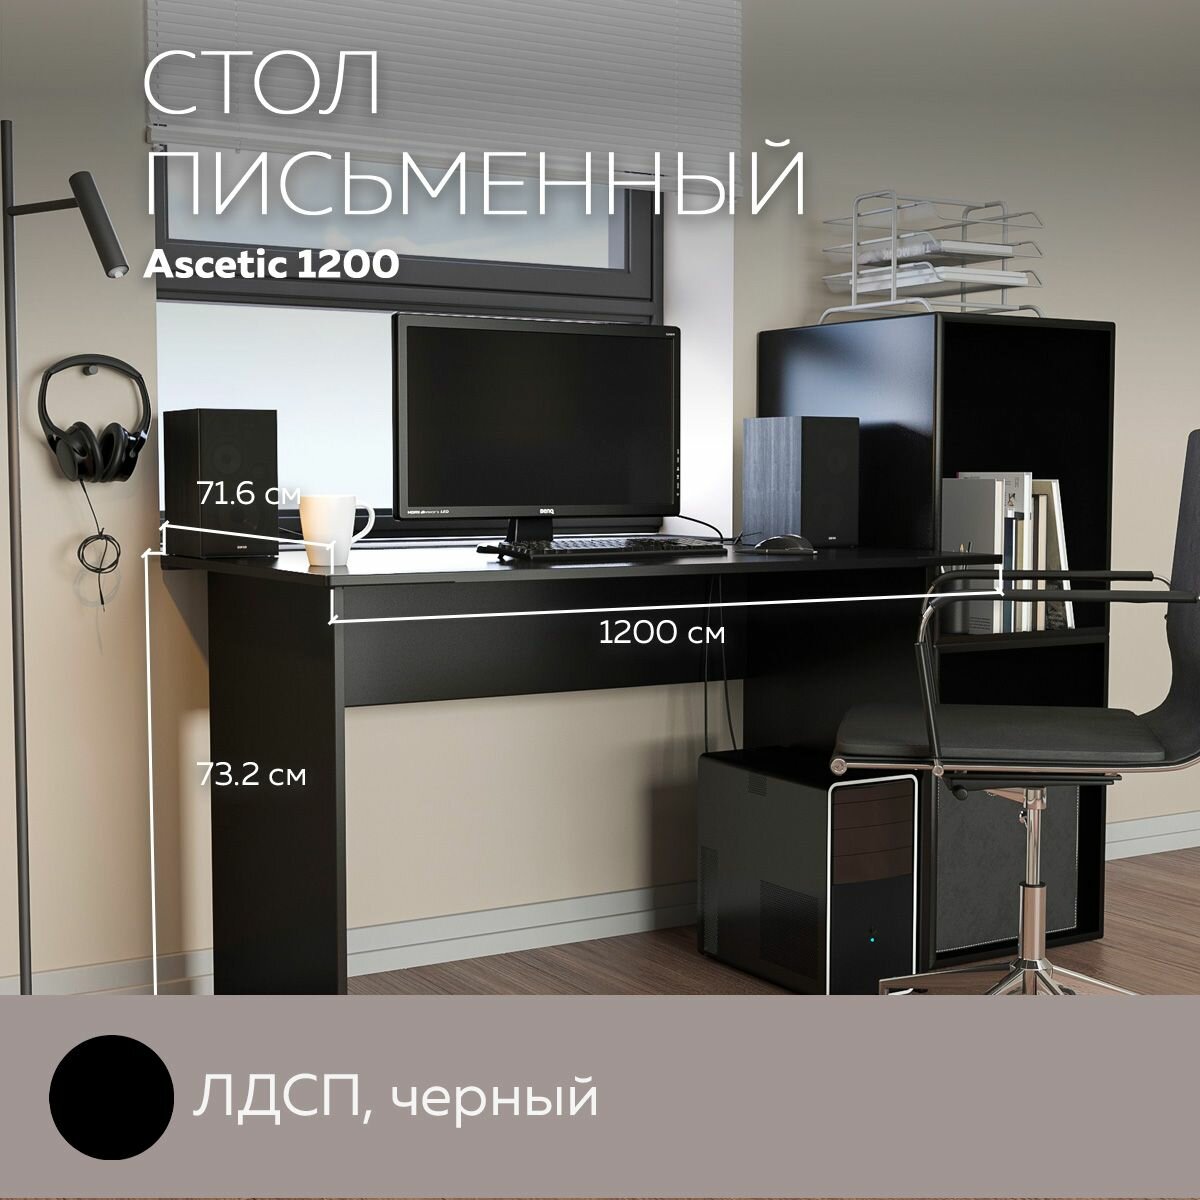 Стол компьютерный, стол письменный Ascetic 1200 Черный, 120*71,6 см.